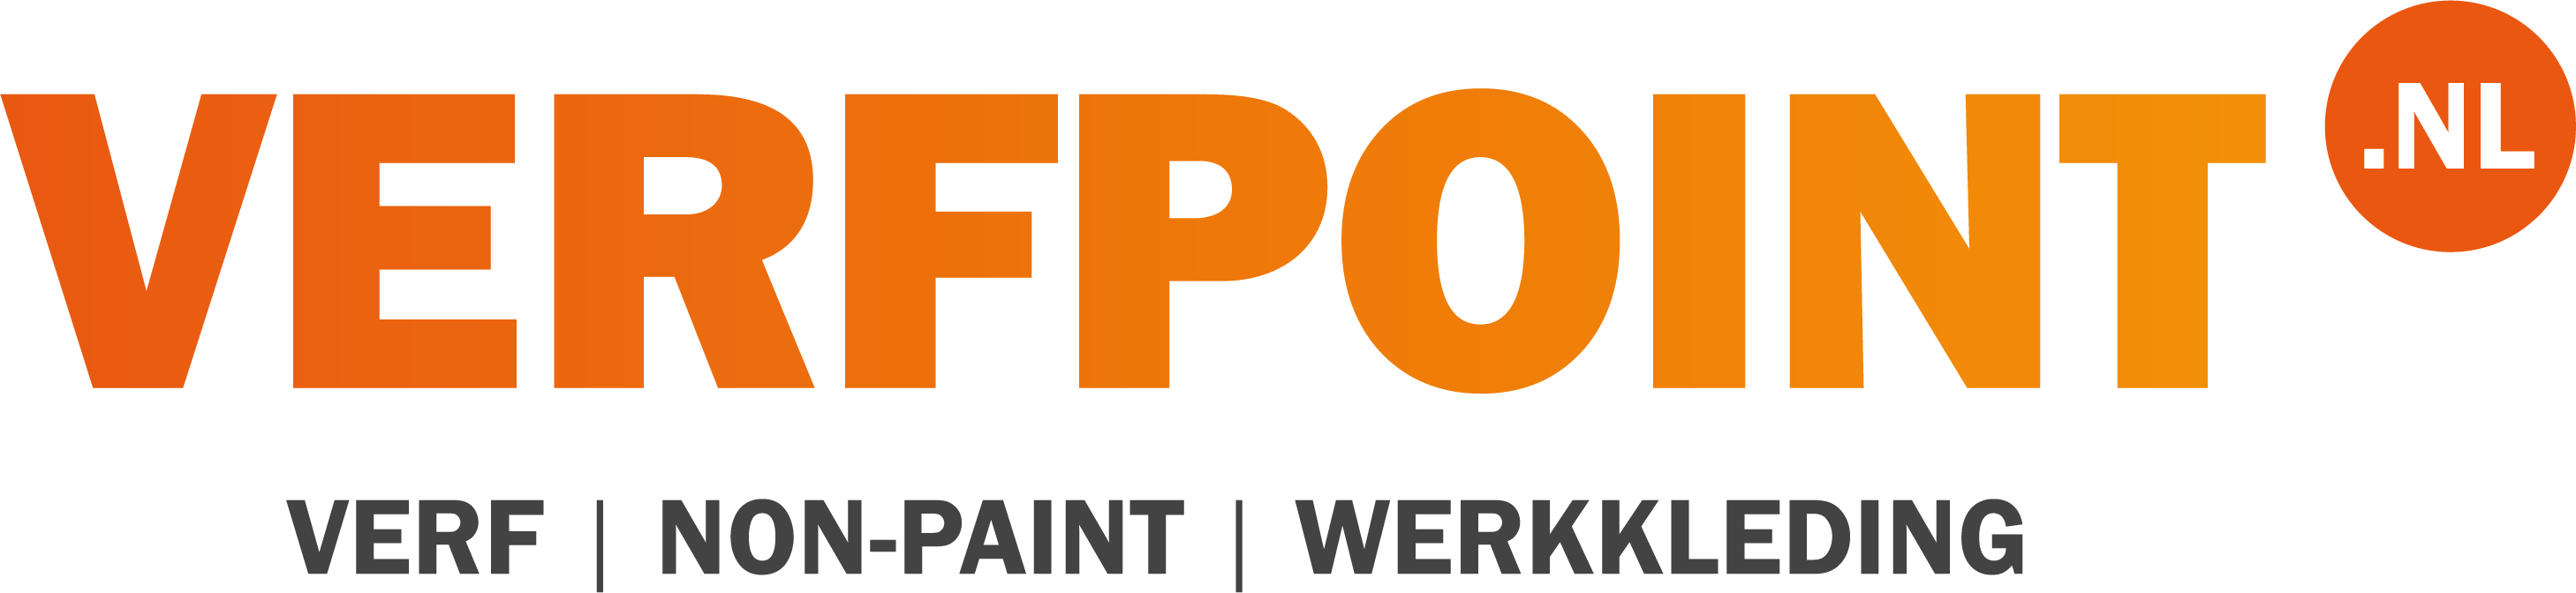 VerfPoint.nl